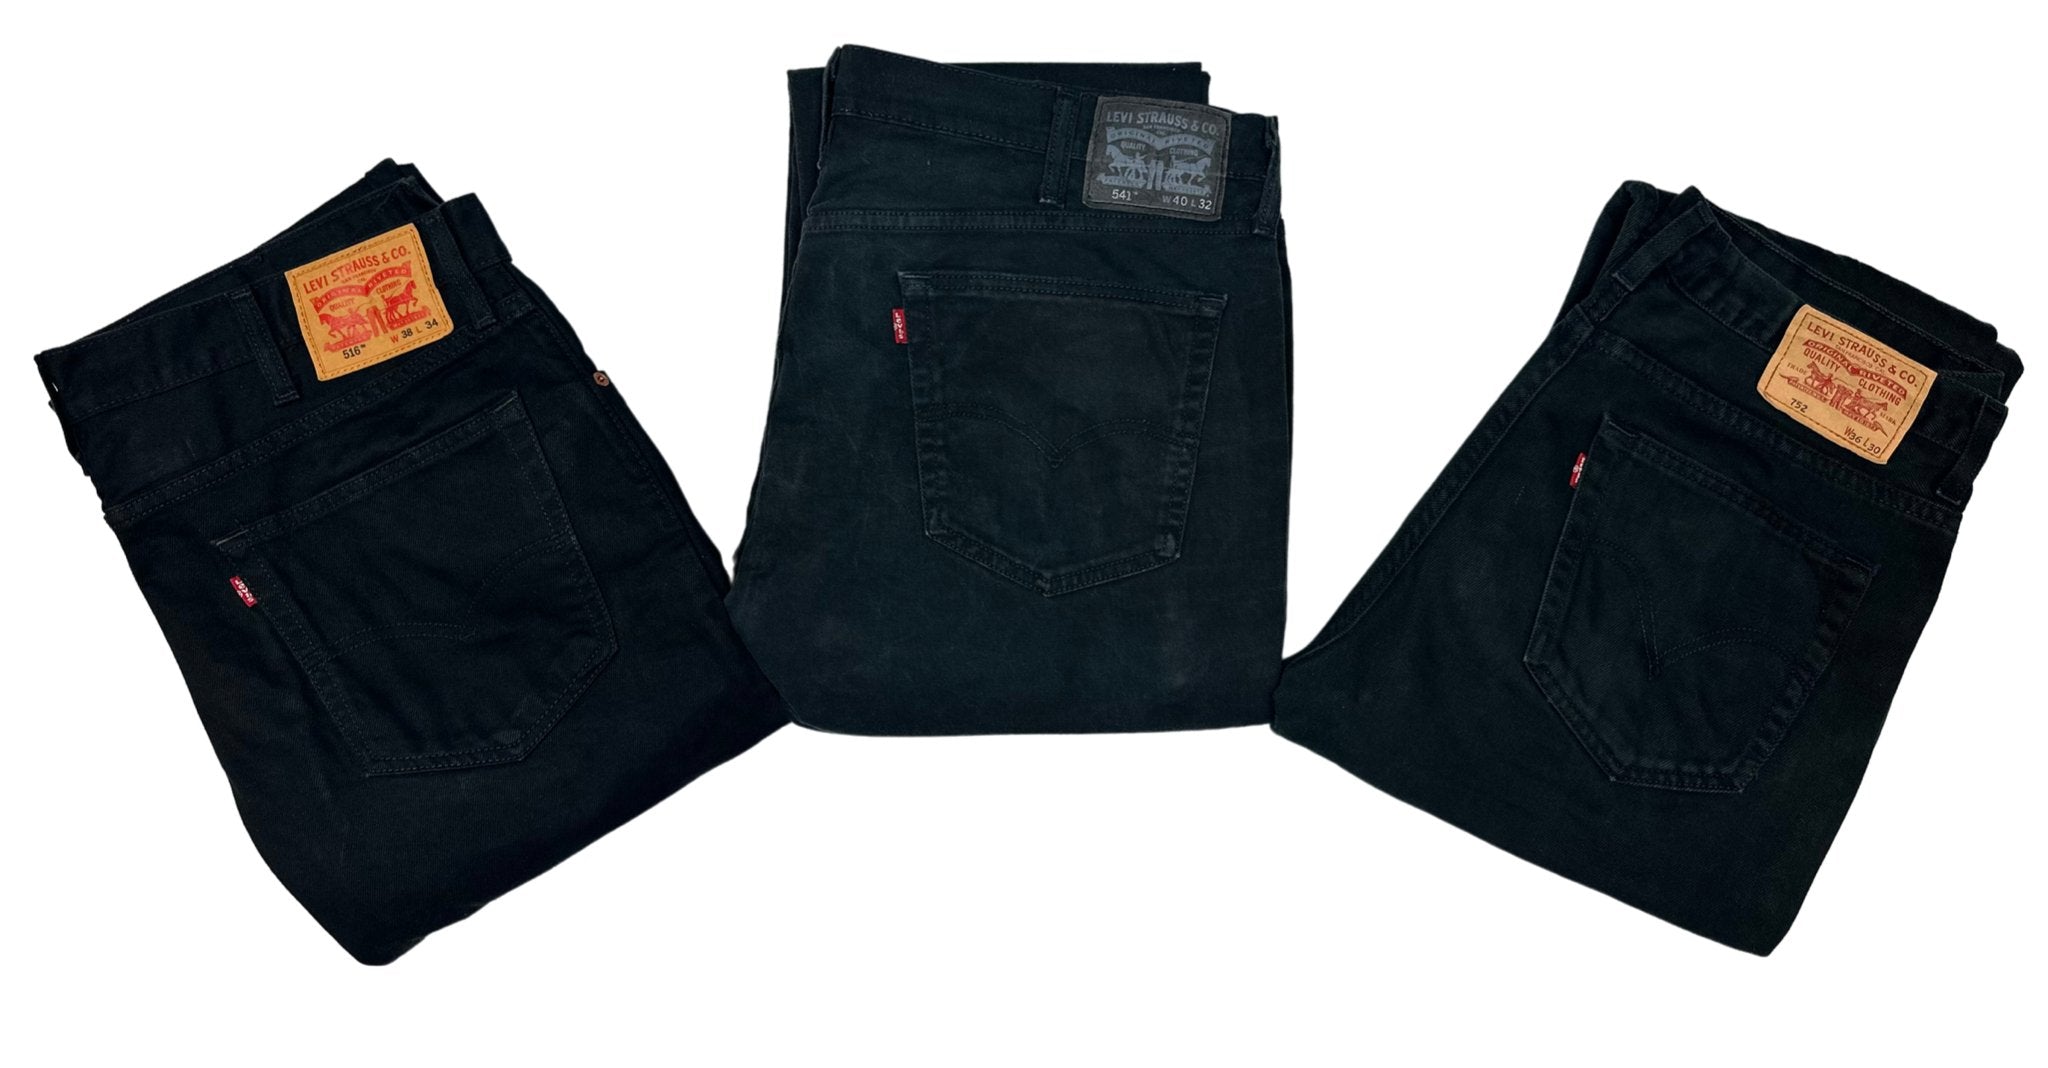 Vintage Levi's Black Jeans - Waist 31 - Length 30 - Vintage Superstore Online